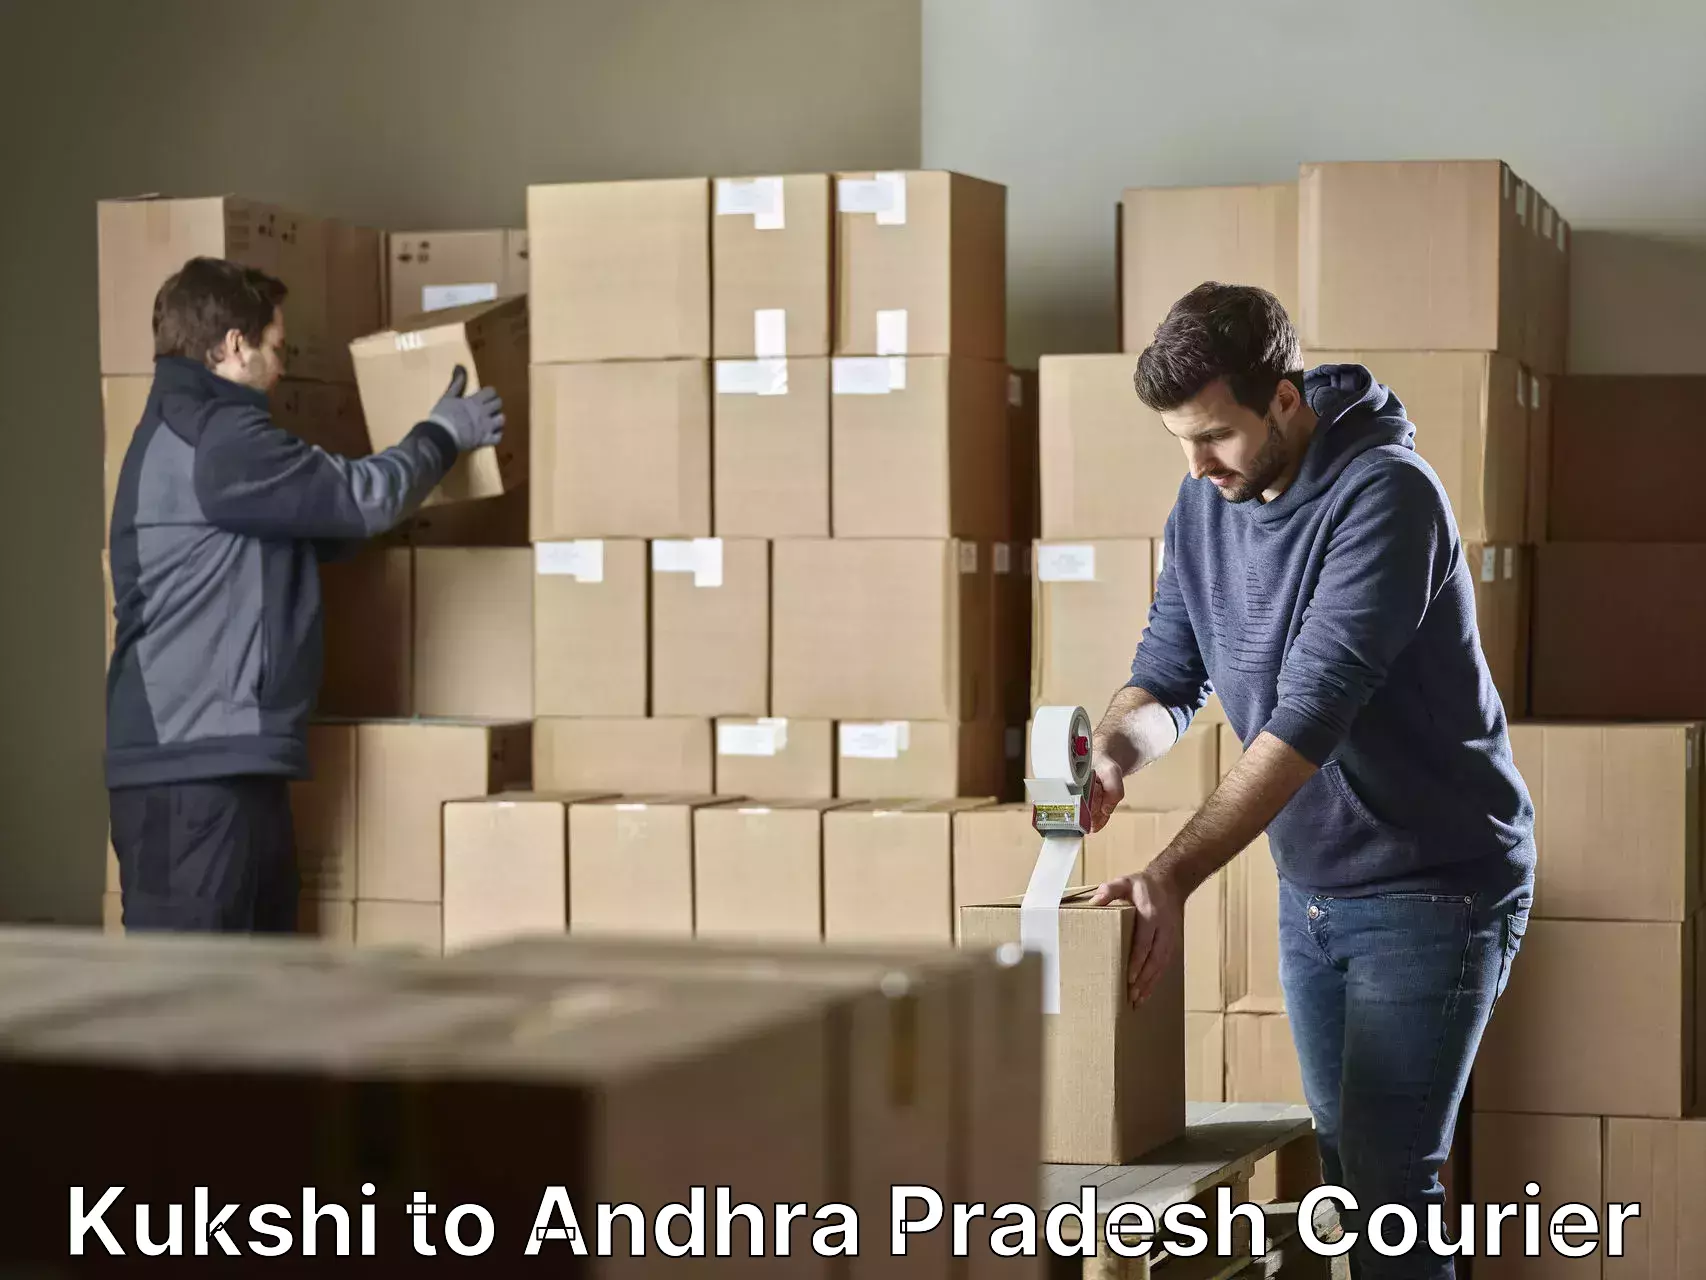 Furniture transport professionals Kukshi to Andhra Pradesh